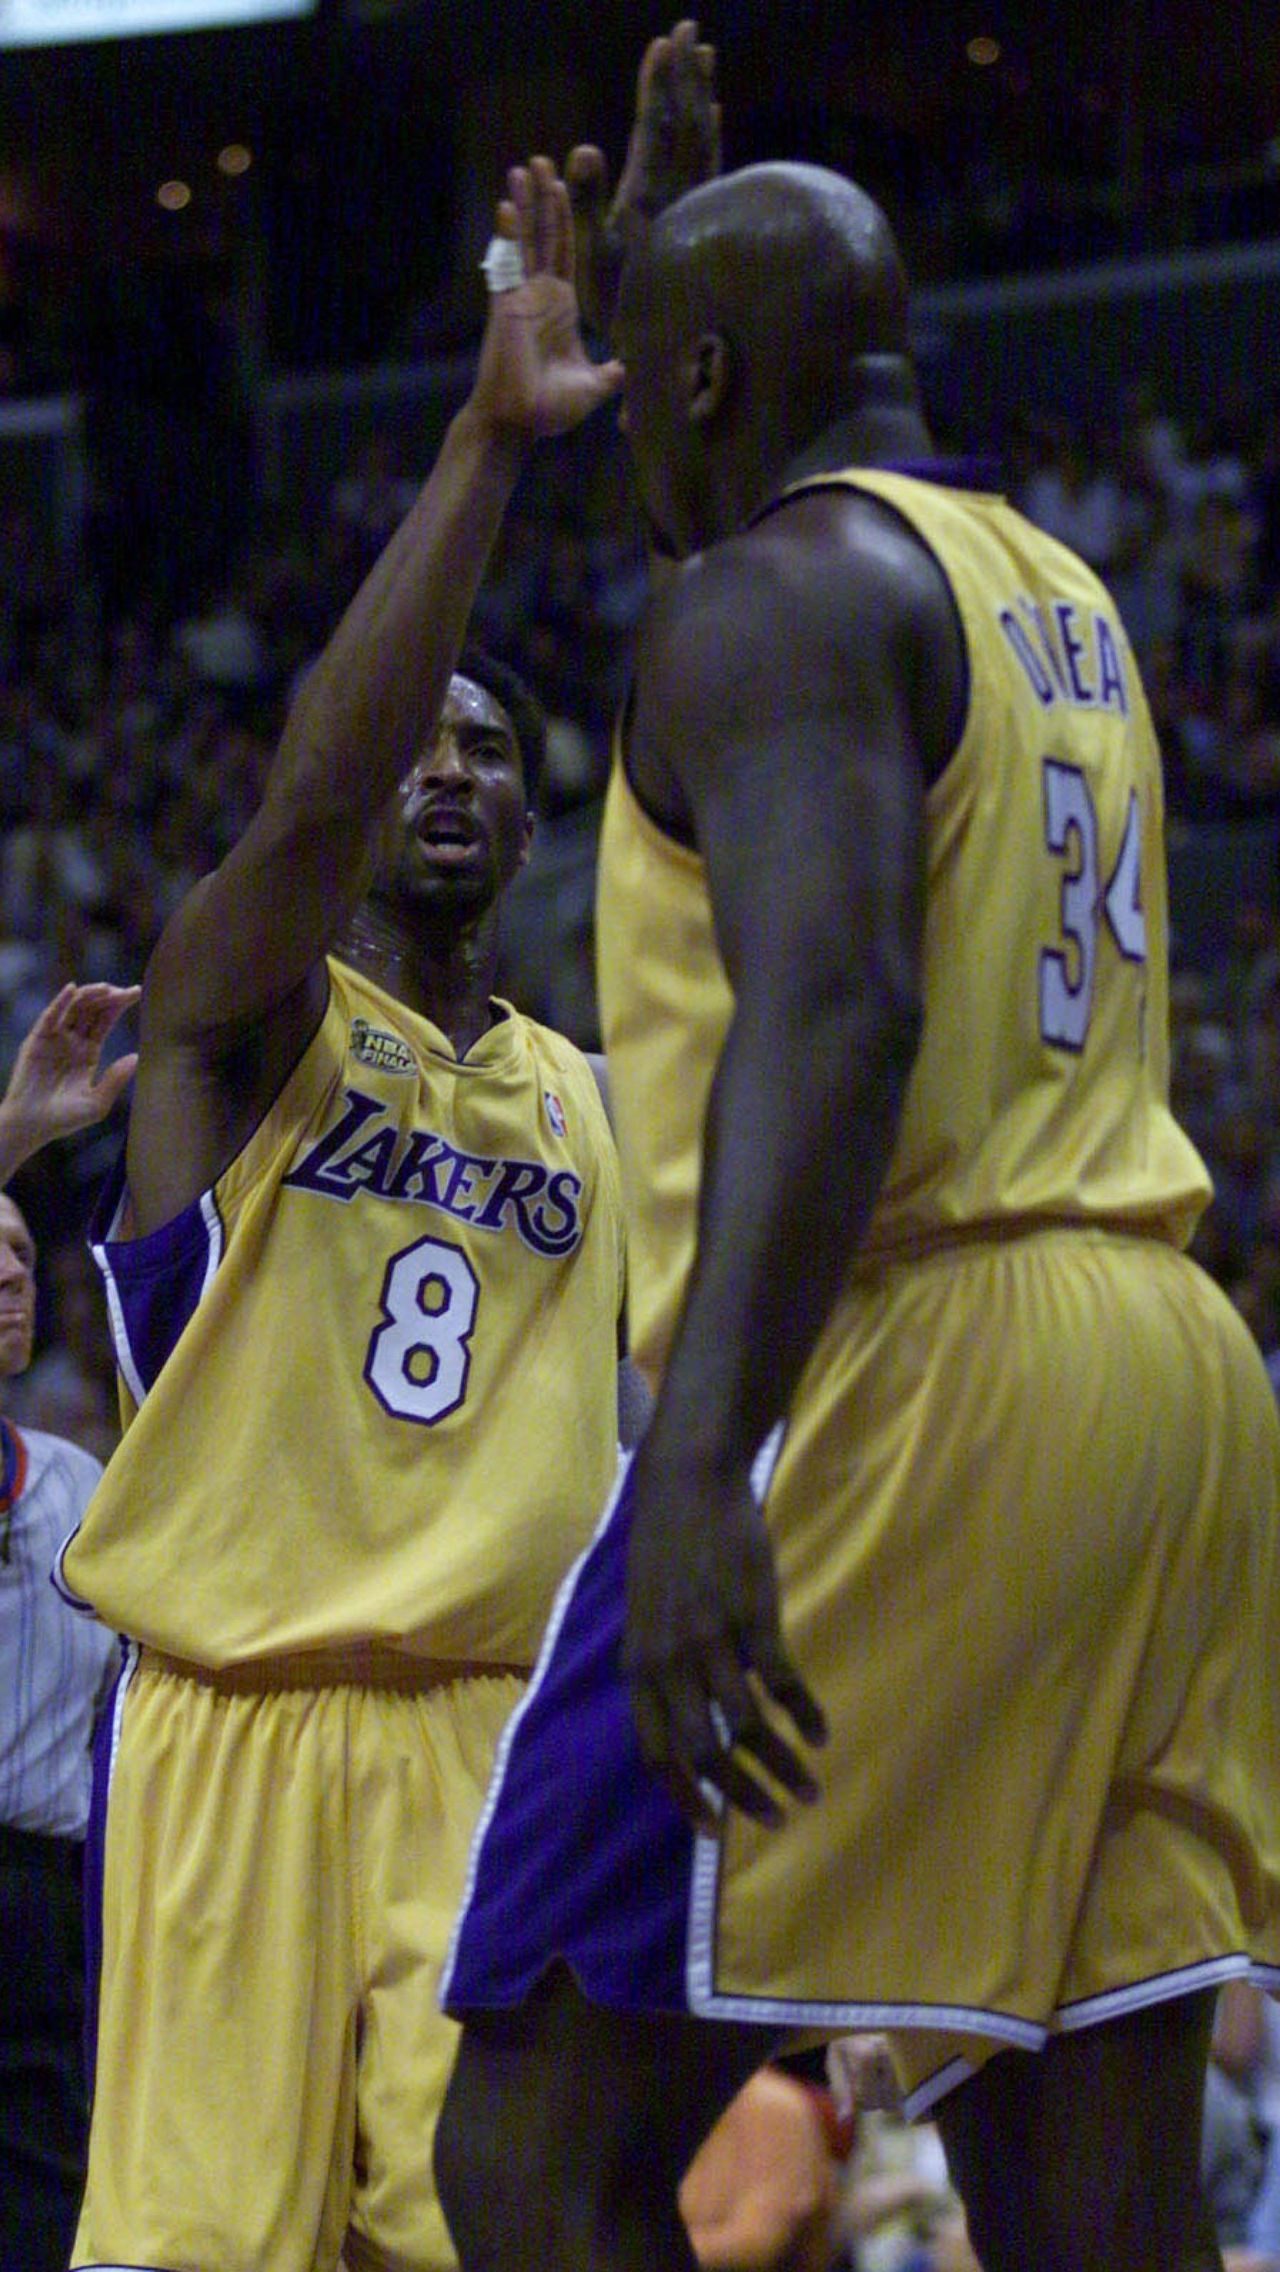 Шакил и Коби вместе провели 461 игру за «Лейкерс», одержав в общей сложности 336 побед при 125 поражениях. Партнёры по команде три раза подряд становились чемпионами НБА — в 2000, 2001 и 2002 годах.